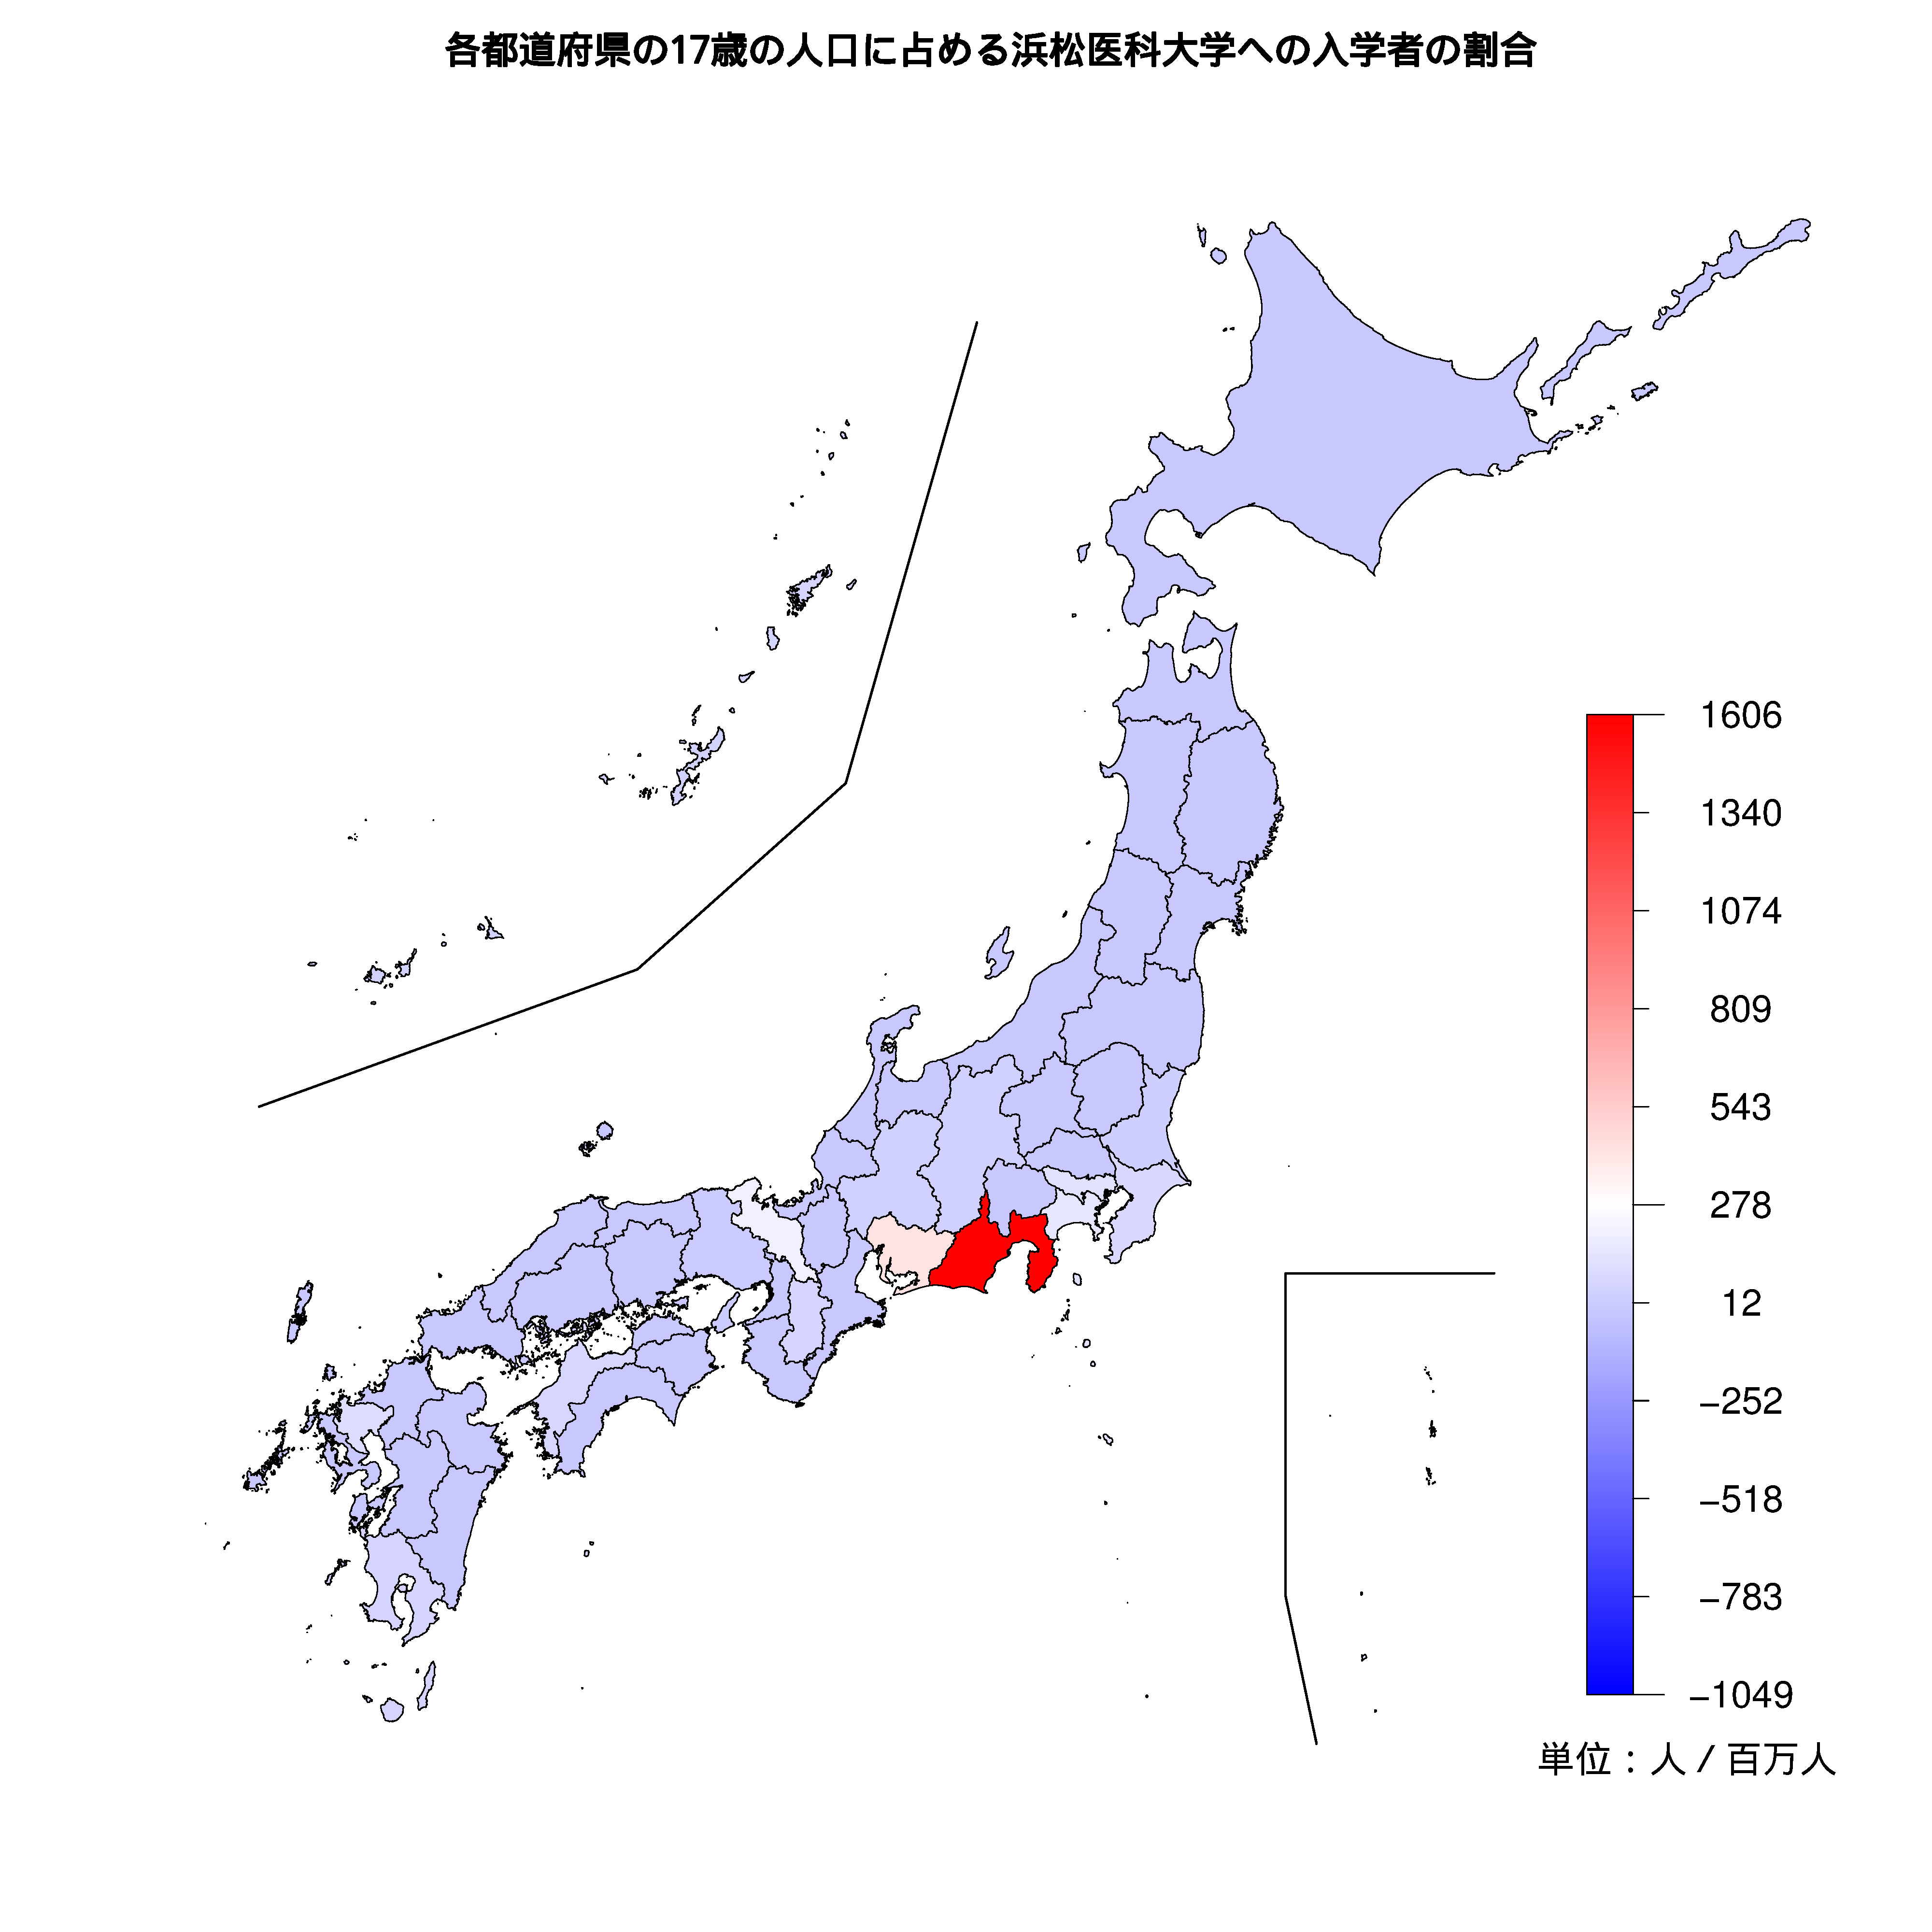 浜松医科大学への入学者が多い都道府県の色分け地図